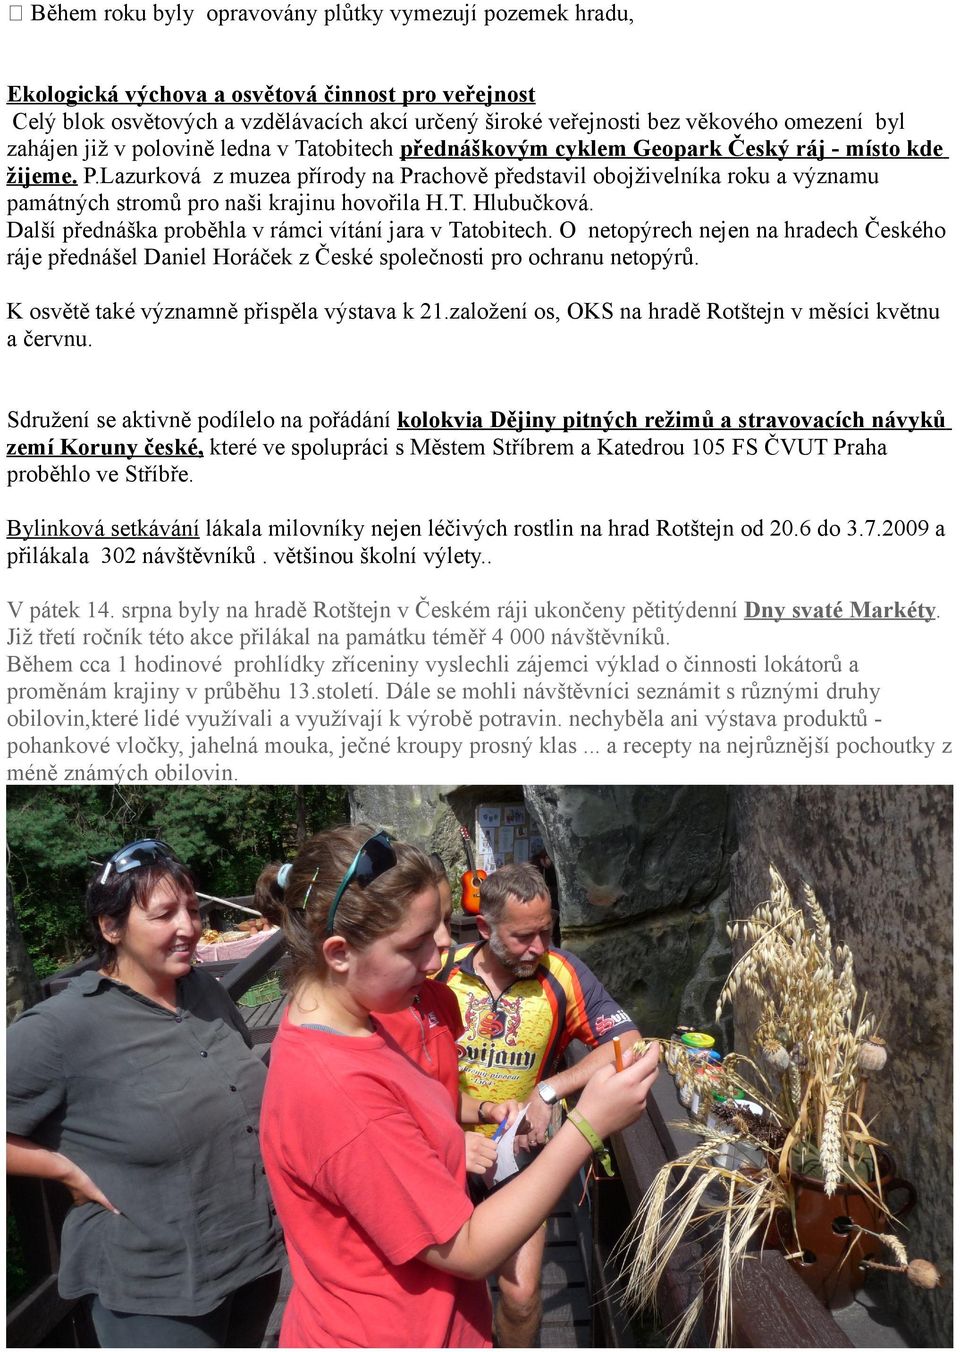 Lazurková z muzea přírody na Prachově představil obojživelníka roku a významu památných stromů pro naši krajinu hovořila H.T. Hlubučková. Další přednáška proběhla v rámci vítání jara v Tatobitech.